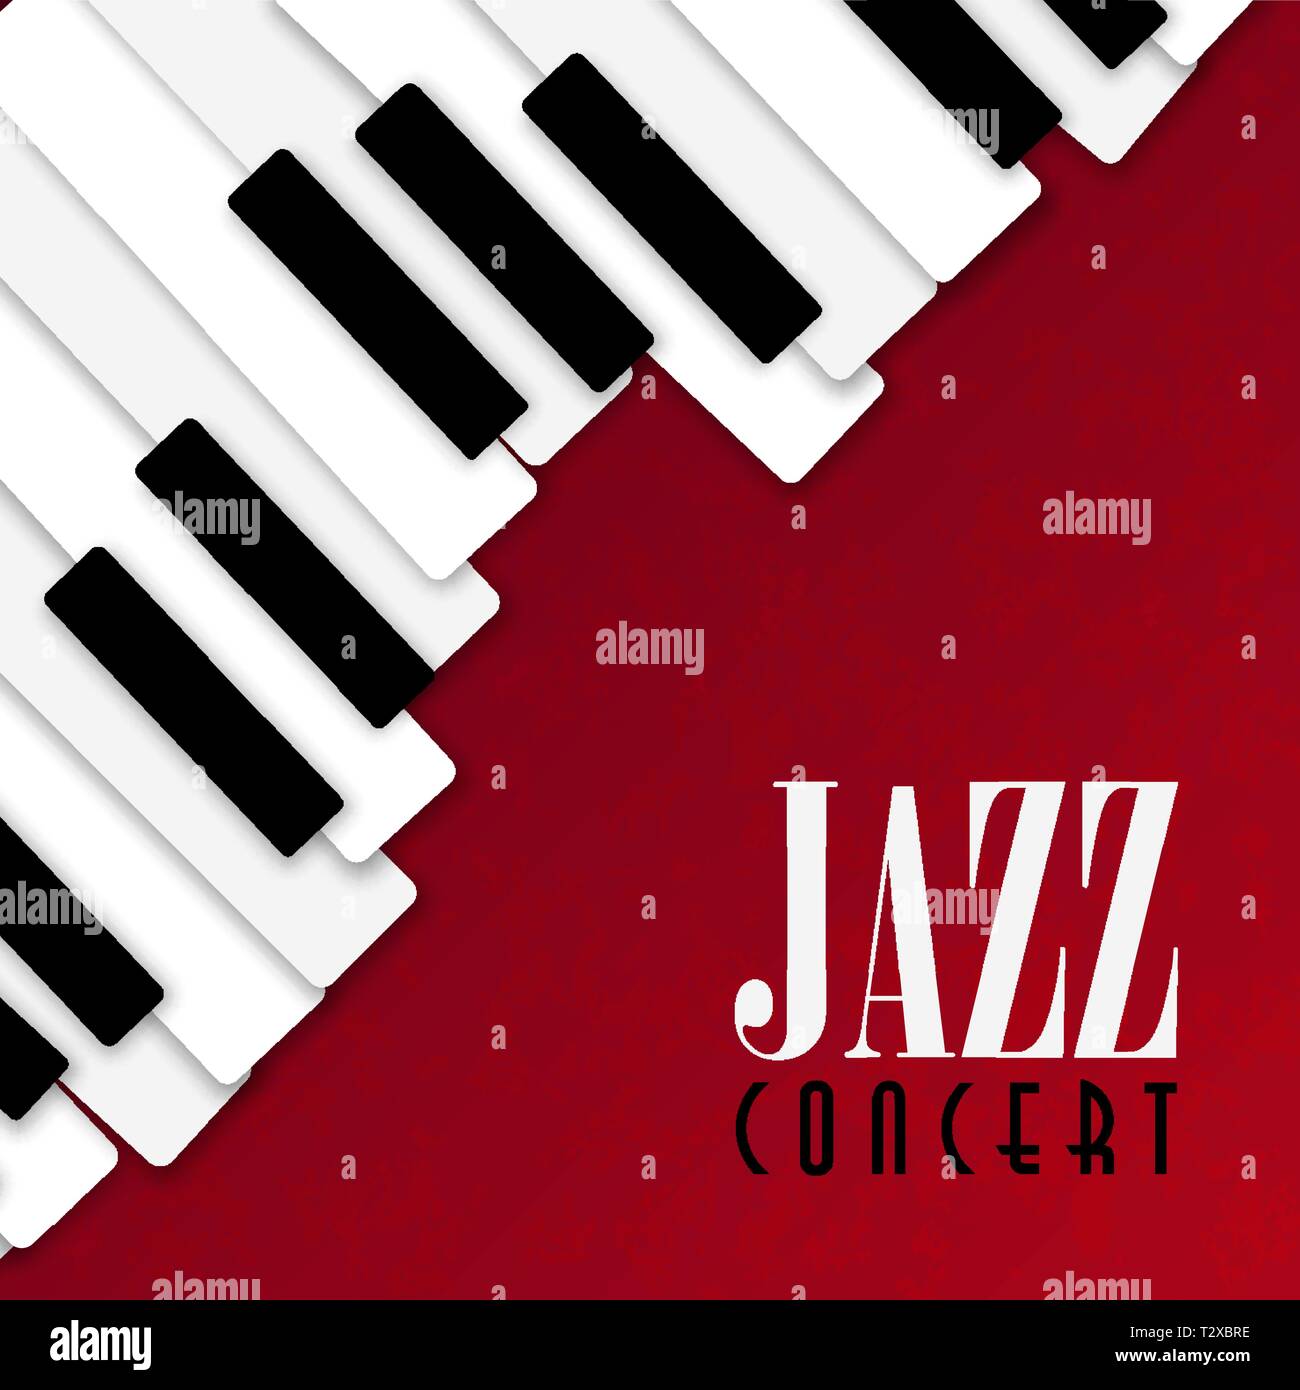 Jazz Konzert poster Abbildung: Klavier Tasten auf rote Farbe Hintergrund für live Musik Einladung oder Musical Festival. Stock Vektor